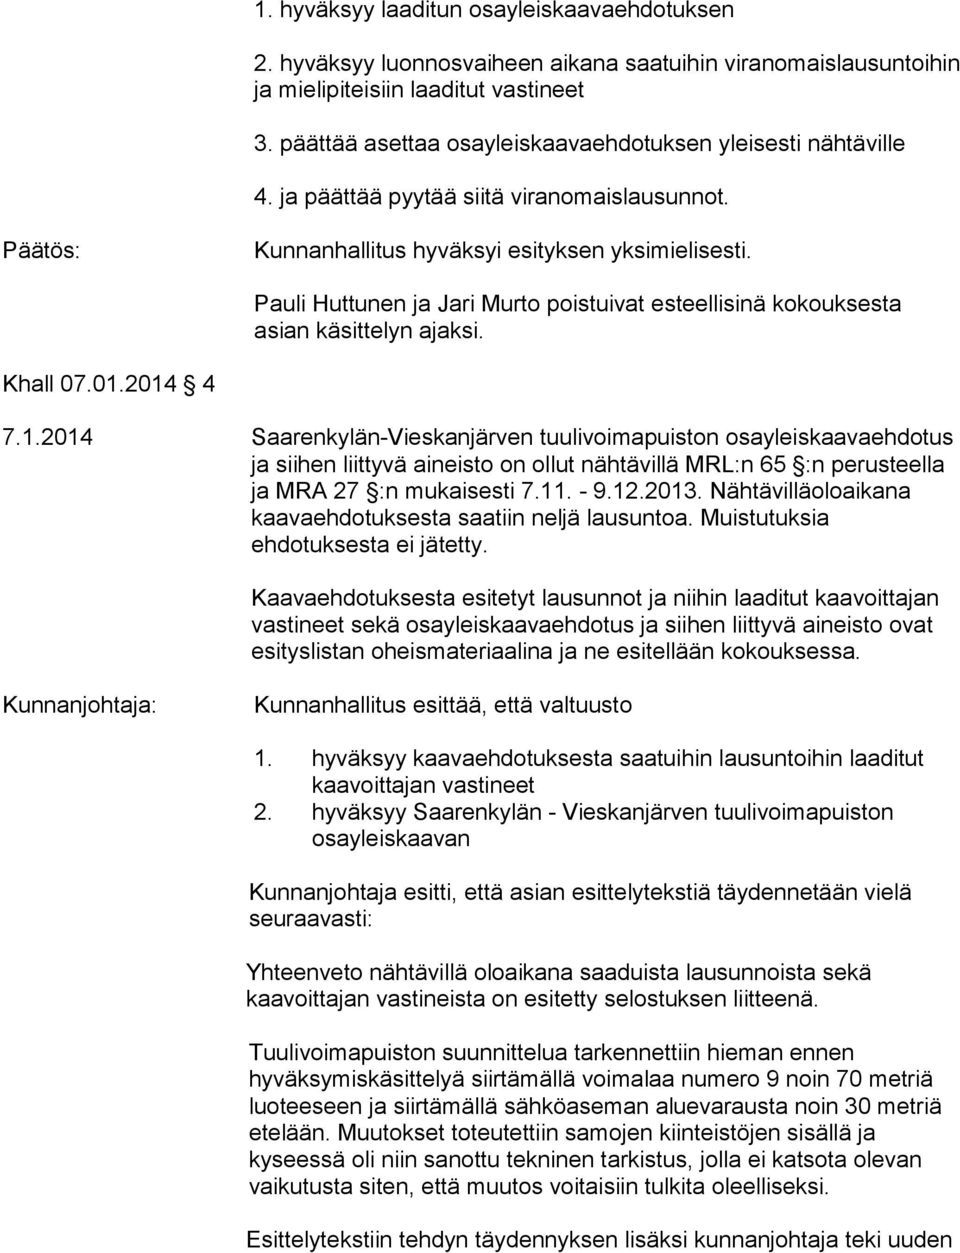 2014 4 7.1.2014 Saarenkylän-Vieskanjärven tuulivoimapuiston osayleiskaavaehdotus ja siihen liittyvä aineisto on ollut nähtävillä MRL:n 65 :n perusteella ja MRA 27 :n mukaisesti 7.11. - 9.12.2013.